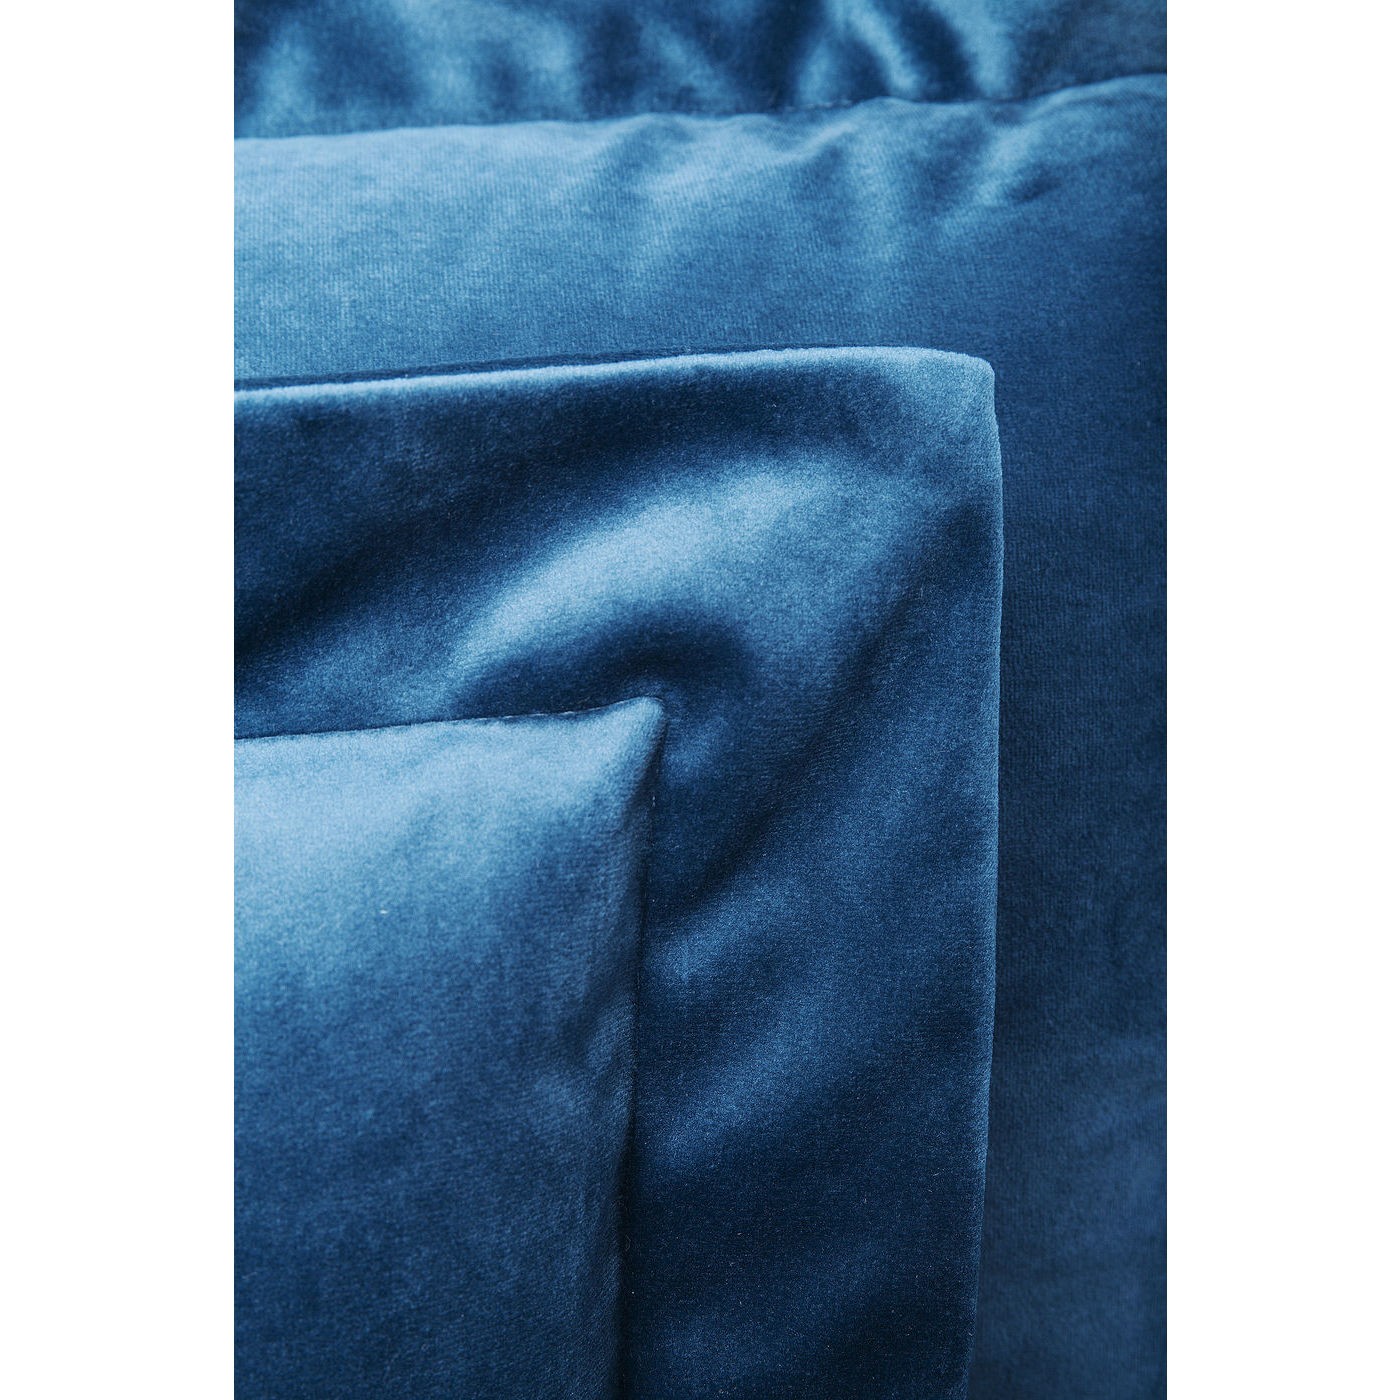 Fauteuil Lullaby velours bleu pétrole Kare Design